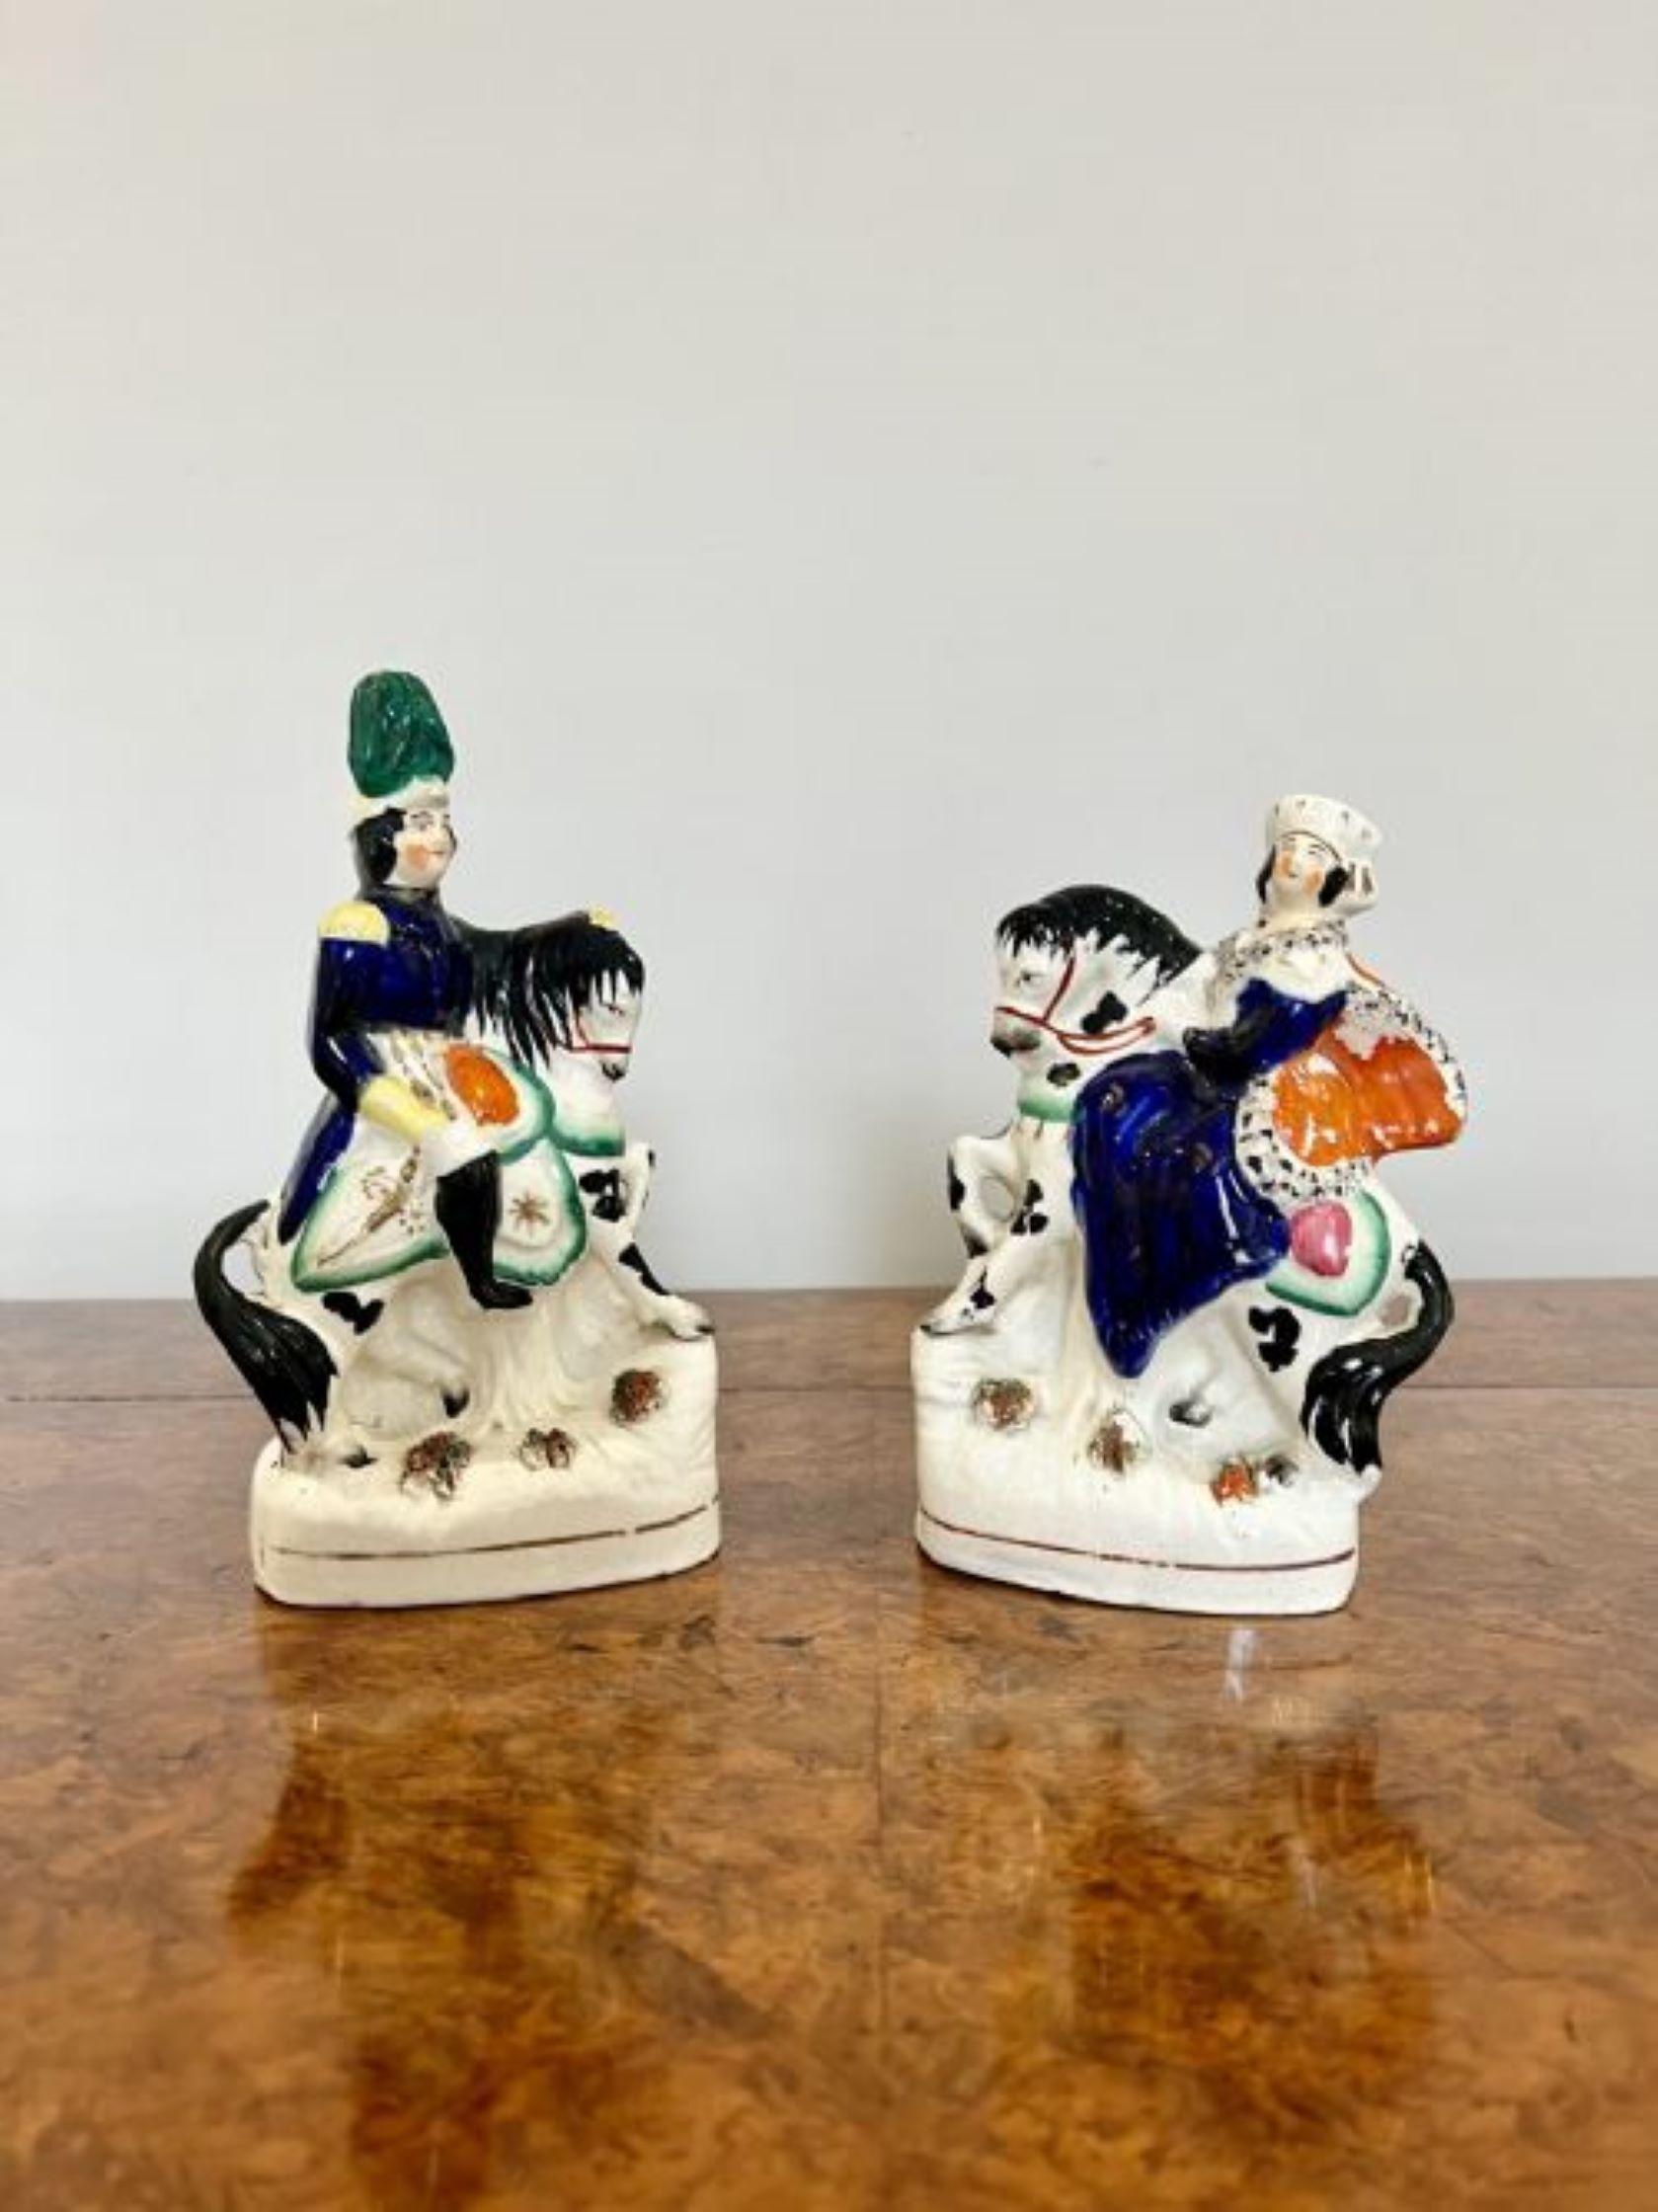 Hochwertiges Paar antiker viktorianischer Staffordshire-Figuren mit einem hochwertigen Paar antiker viktorianischer Staffordshire-Figuren von Prinz Albert und Königin Victoria auf dem Rücken eines Pferdes in wunderschönen blauen, grünen, gelben,